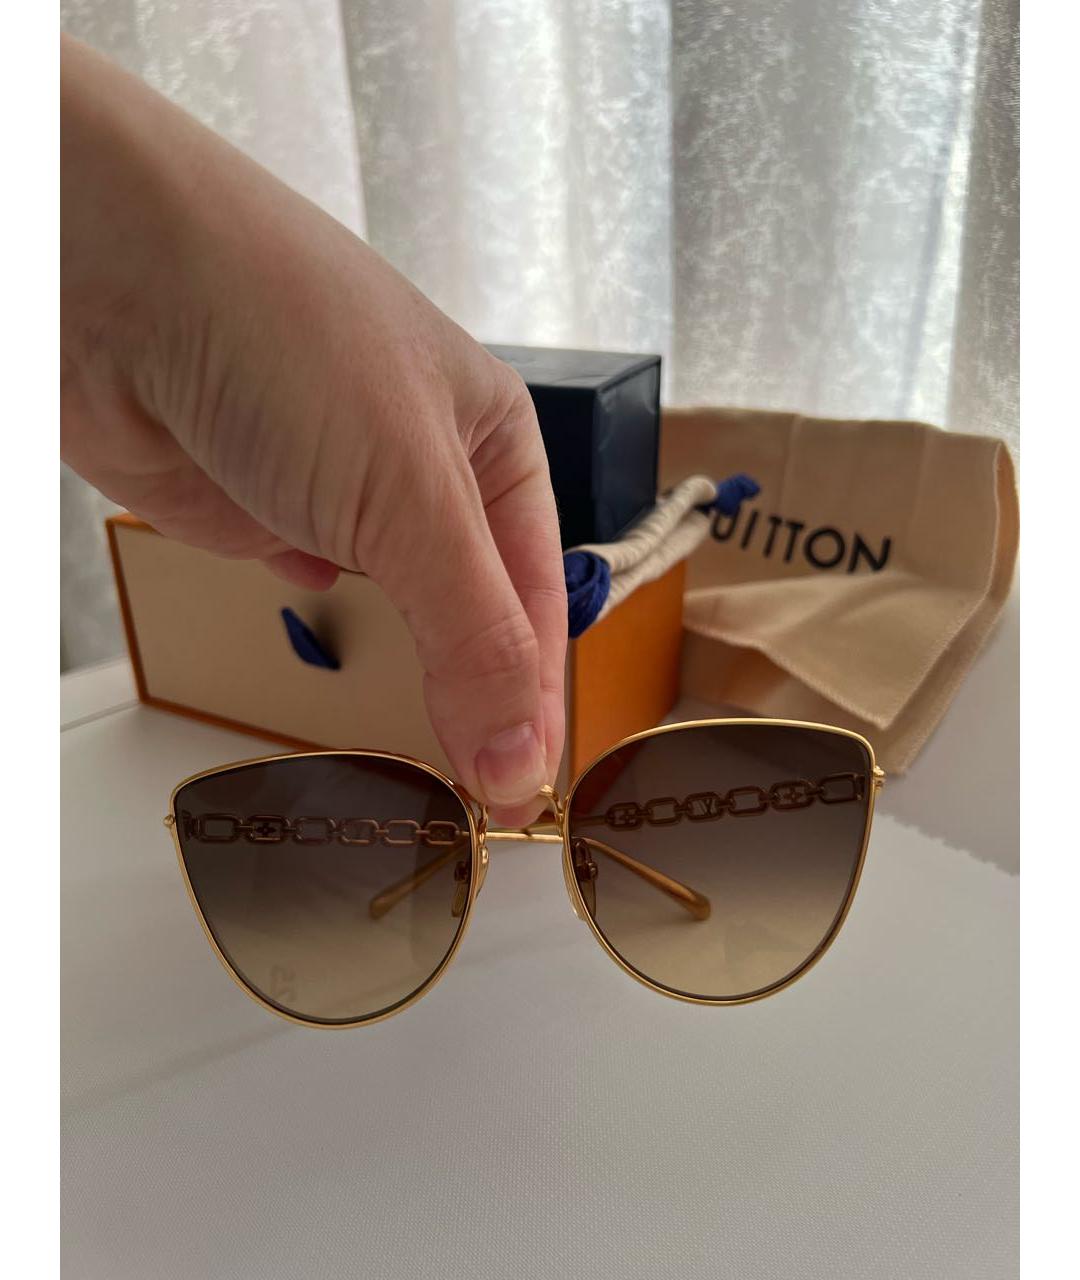 LOUIS VUITTON PRE-OWNED Золотые металлические солнцезащитные очки, фото 5